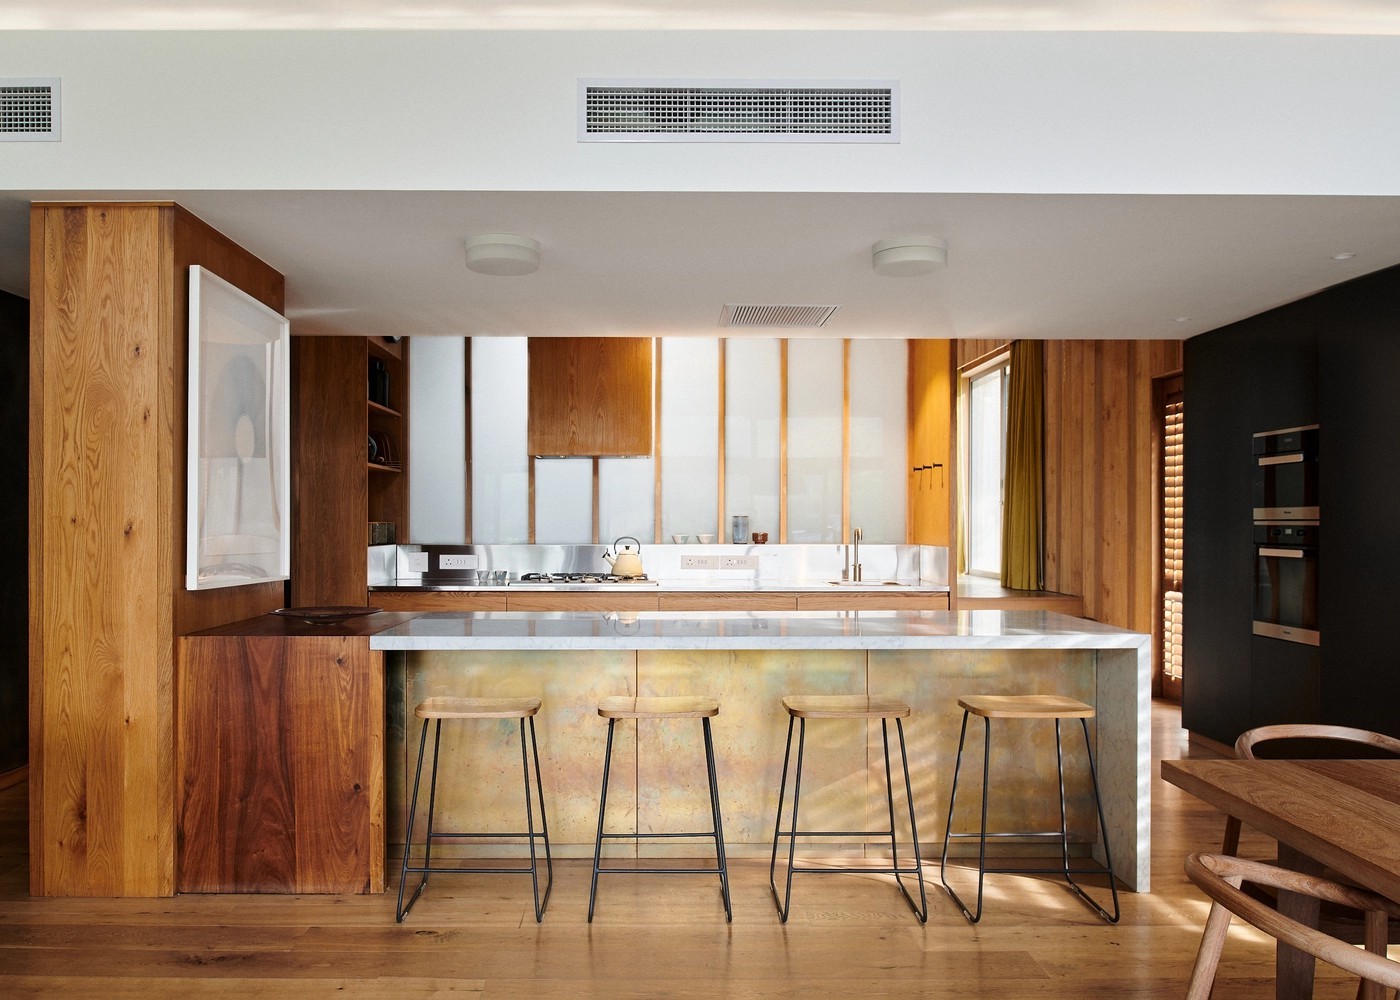 
Bếp với không gian ấm cúng, gọn gàng, mang lại nét đẹp hiện đại cho ngôi nhà
